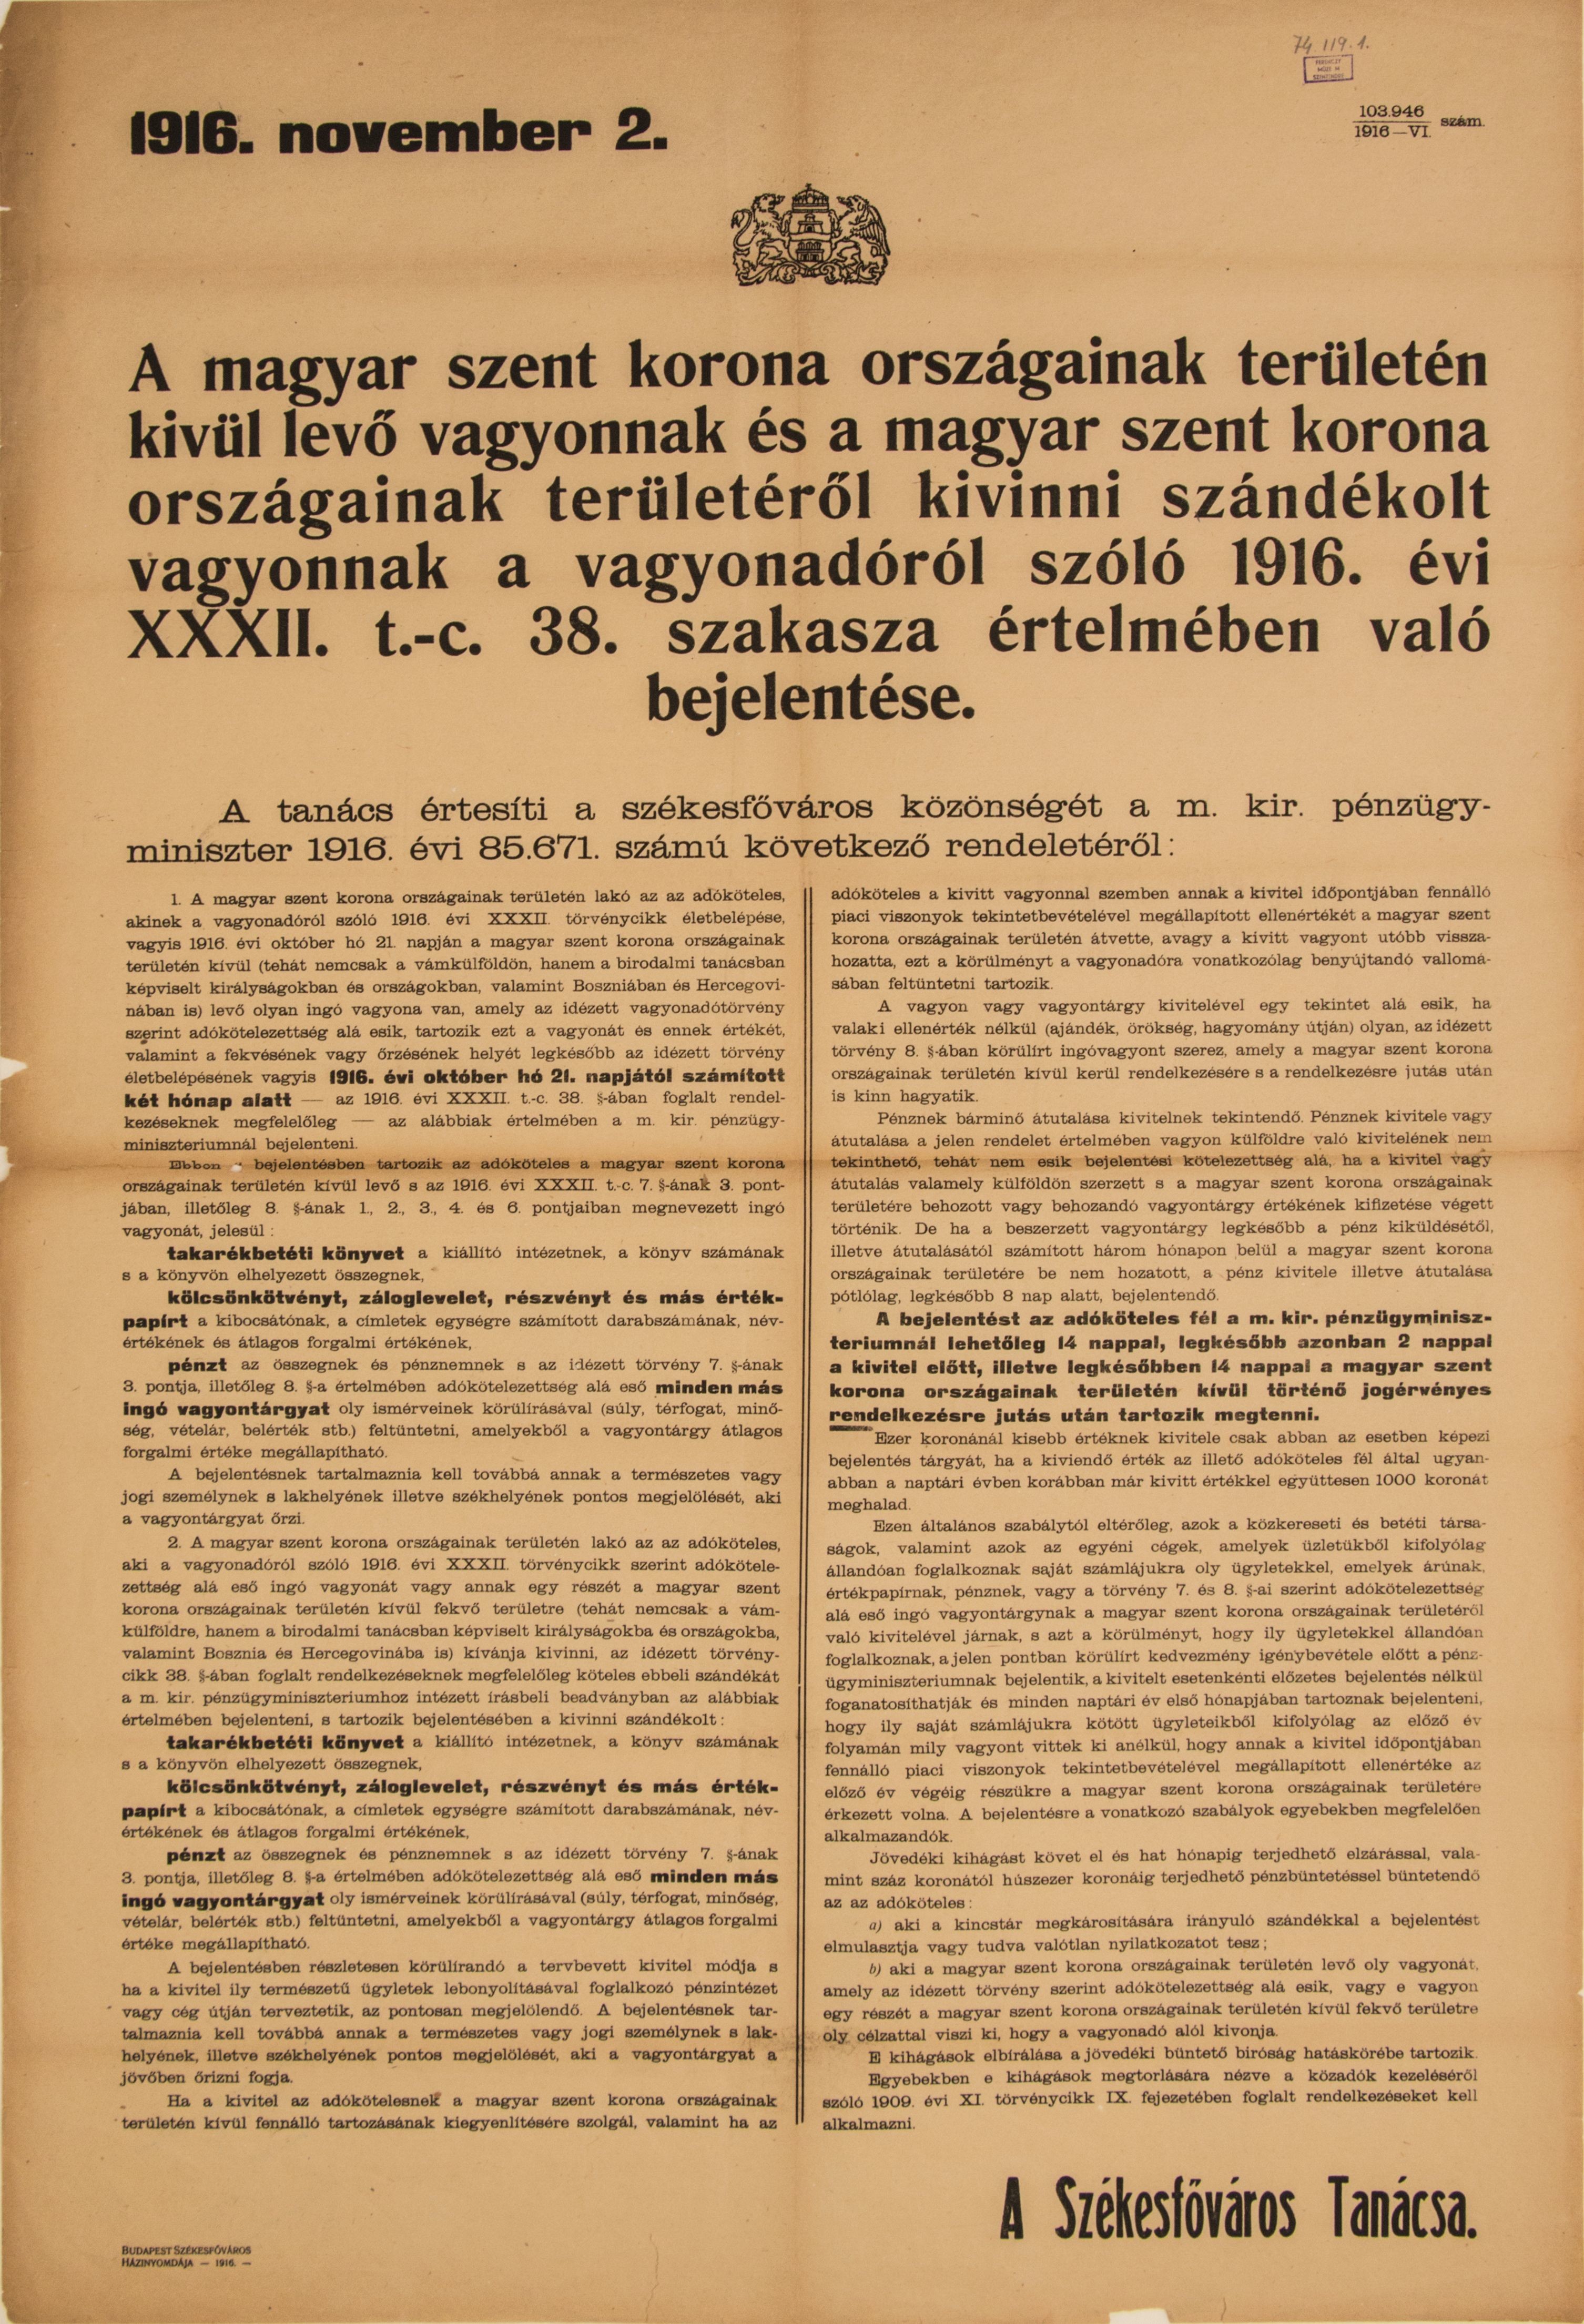 Bejelentés az országból kiviendő és az országon kívül lévő vagyontárgyakról, 1916.11.02. (vagyonadó ügyben) (Ferenczy Múzeumi Centrum CC BY-NC-SA)